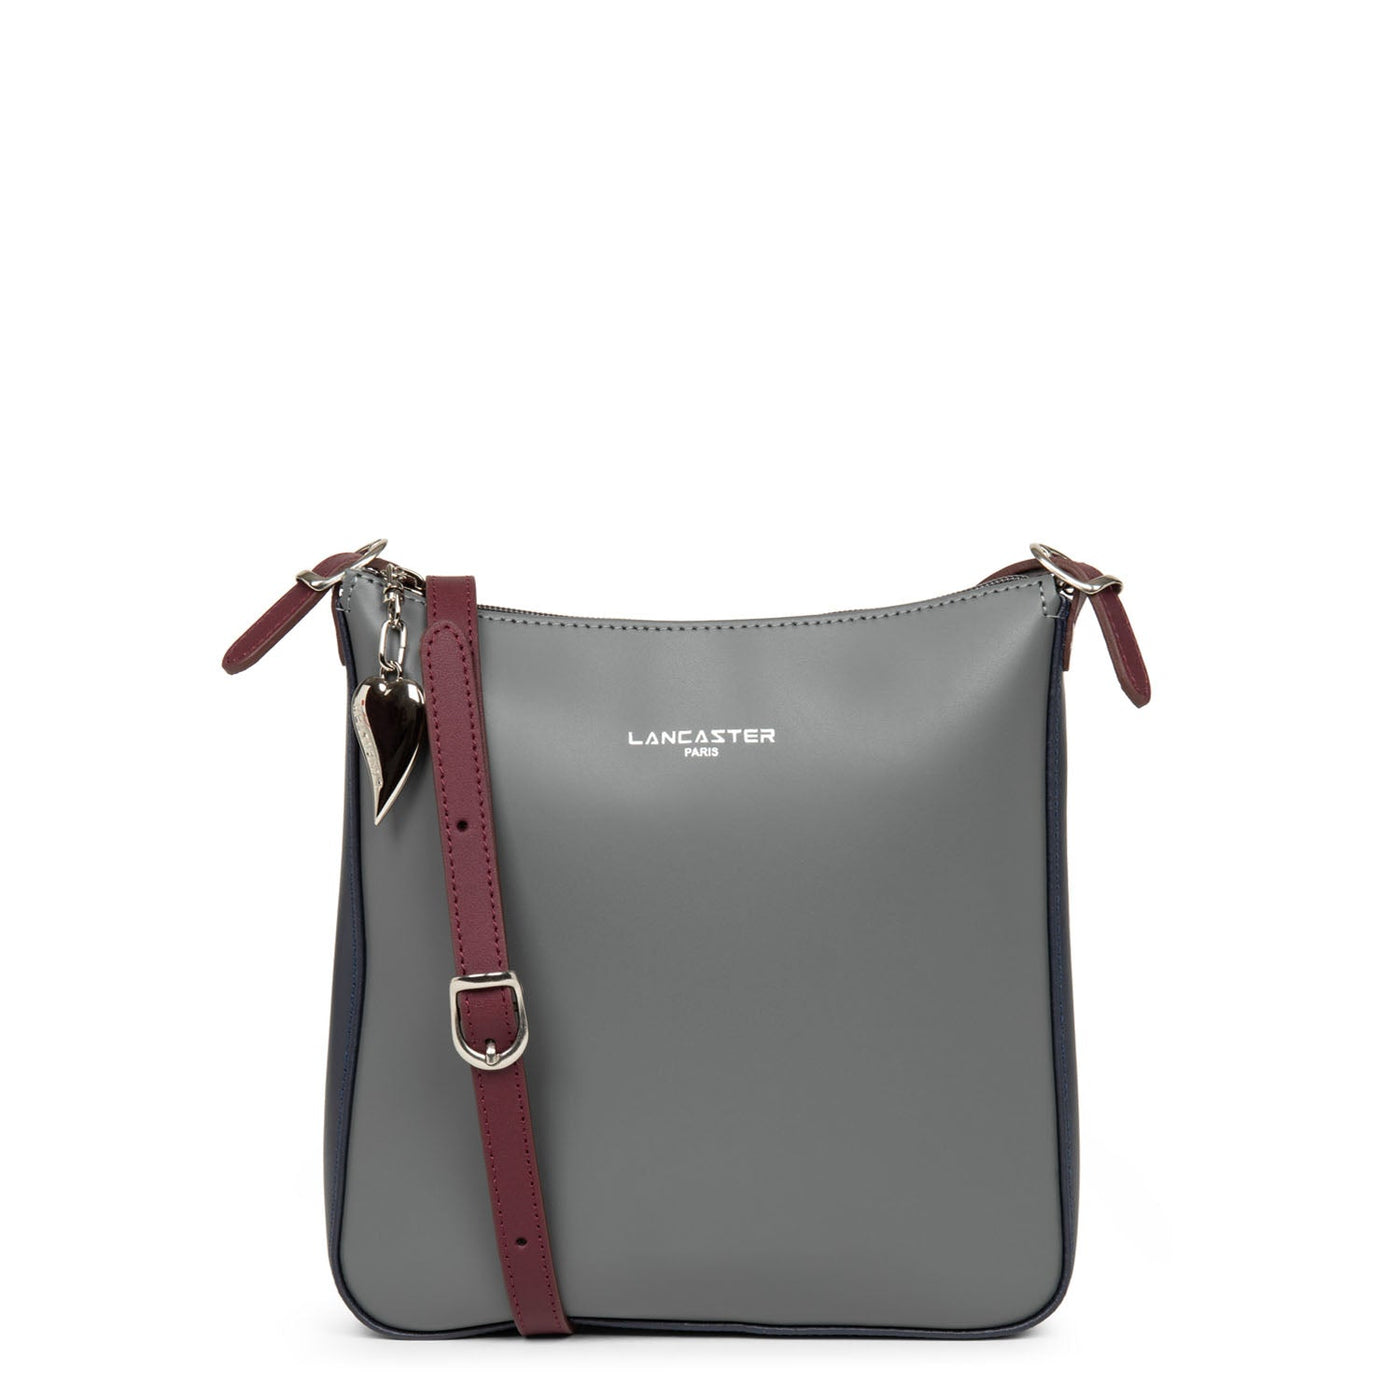 crossbody bag - smooth #couleur_gris-bleu-fonce-bordeaux